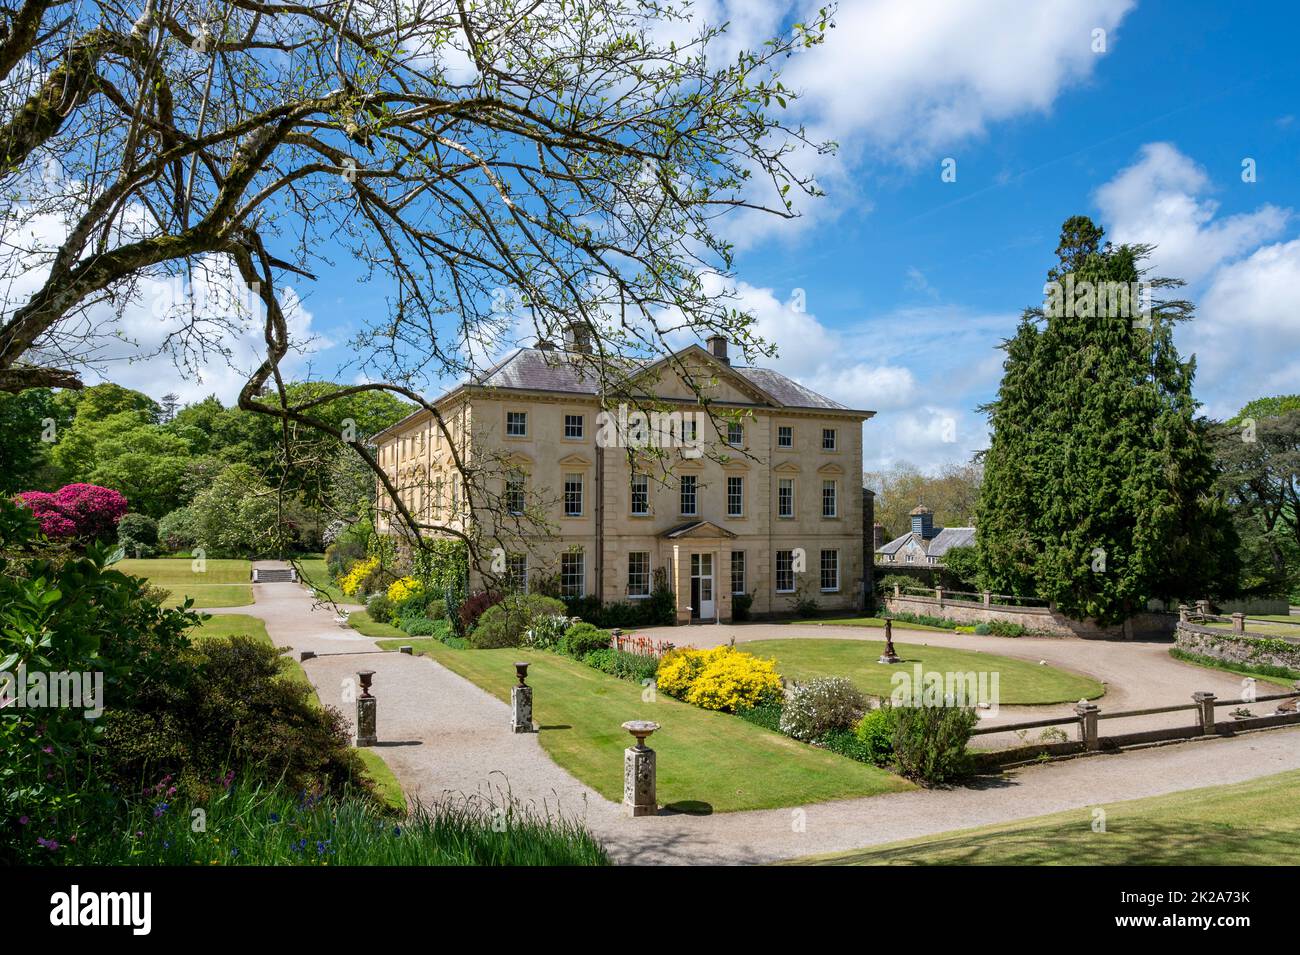 Pencarrow House e giardini, una casa signorile in stile palladiano, in primavera. Cornwall, Regno Unito. Foto Stock